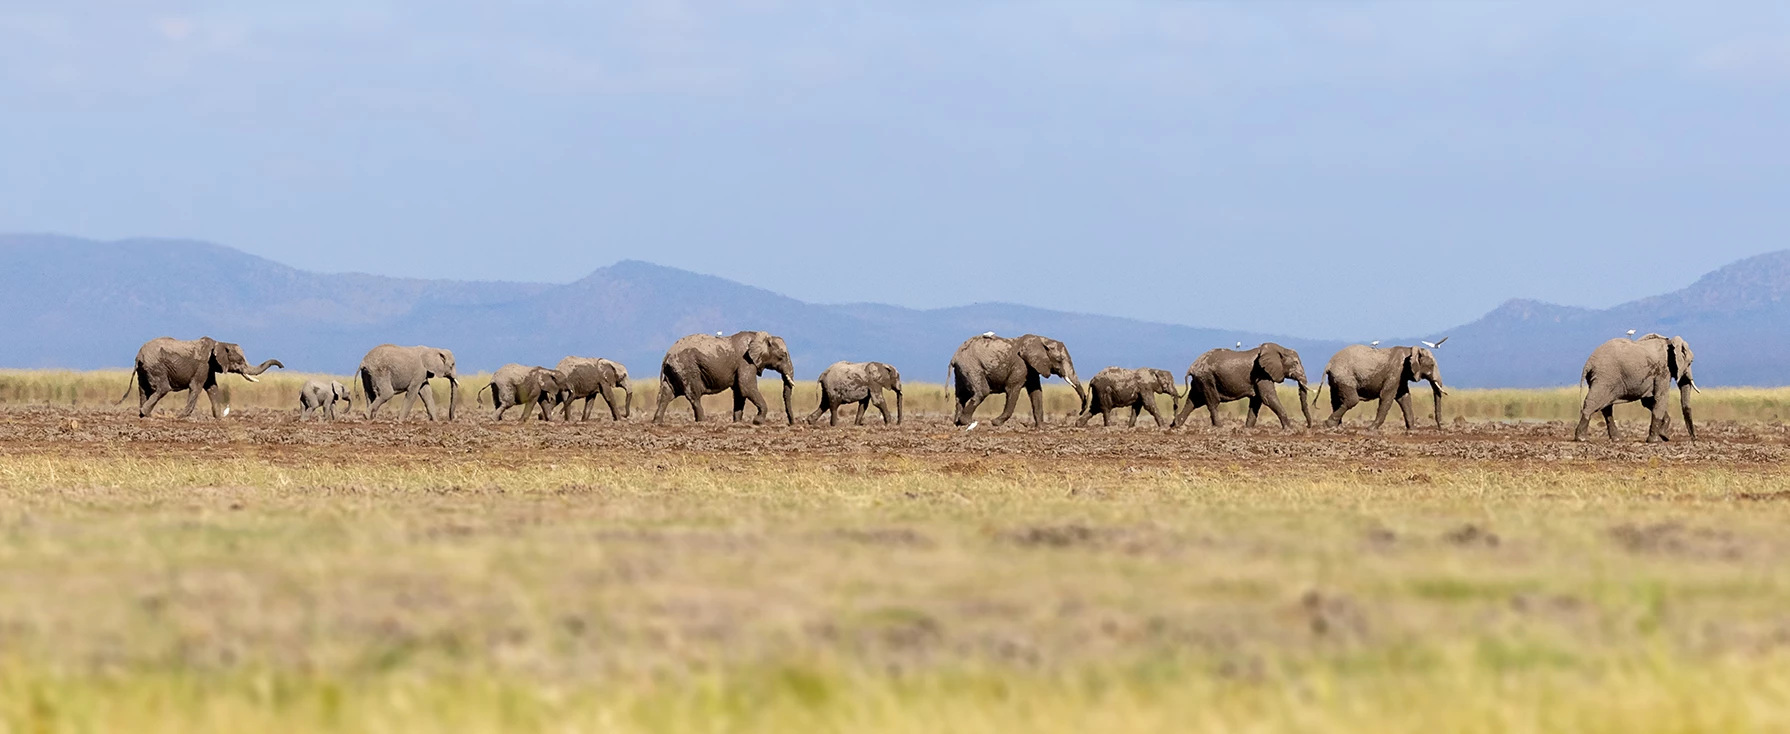 A herd of elephants walk through the open plains